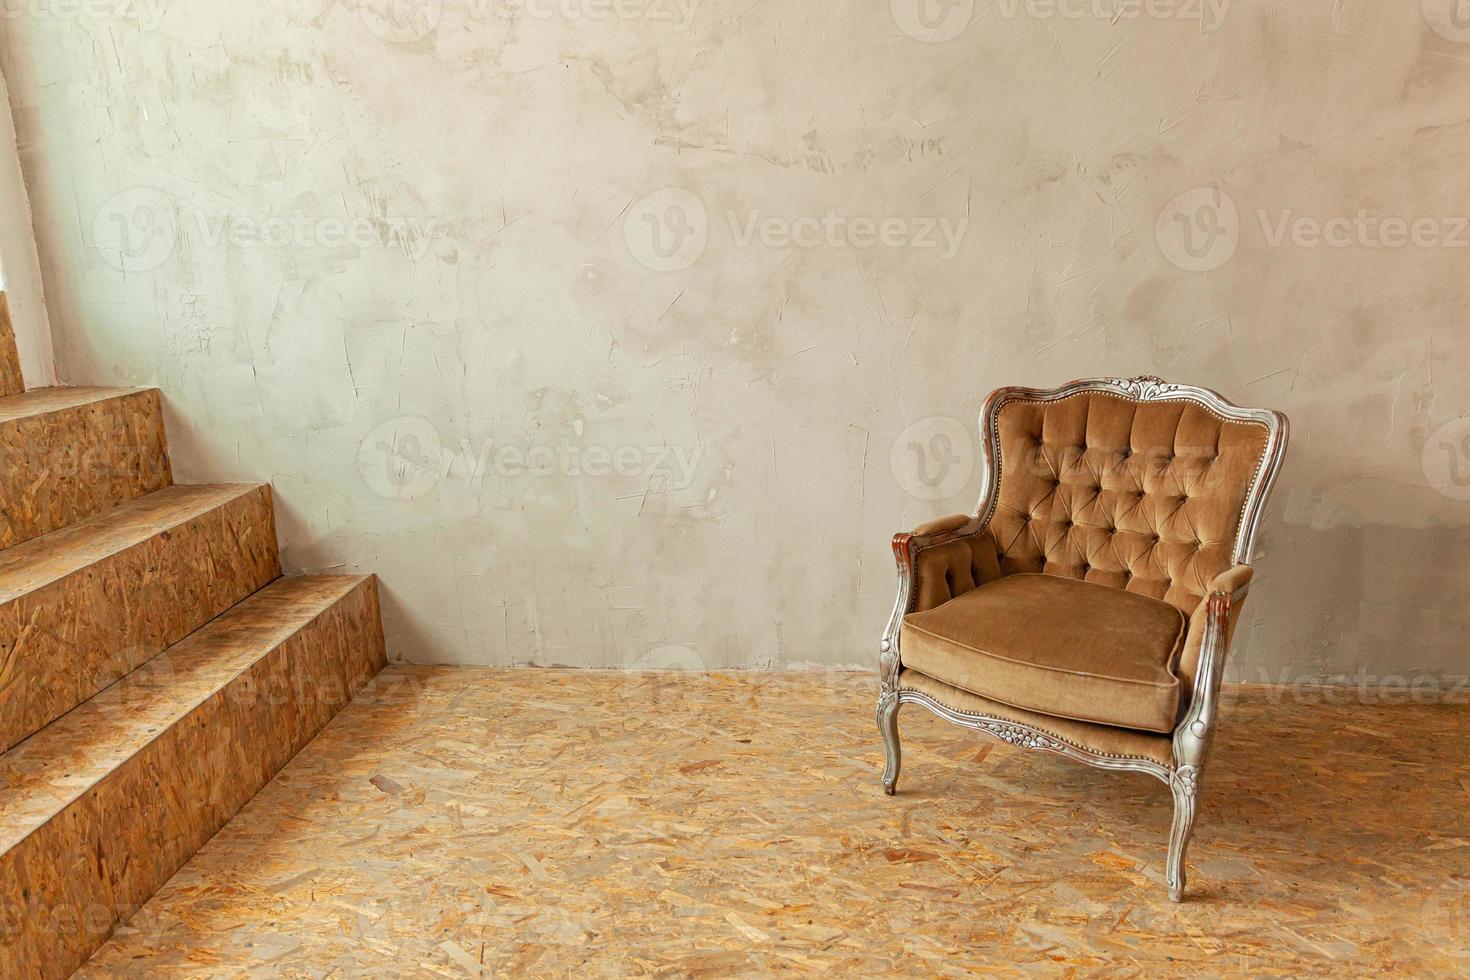 mooie luxe klassieke biege schone binnenkamer in grunge-stijl met bruine barokke fauteuil. vintage antieke bruin-grijze stoel die naast de muur staat. minimalistisch huisontwerp. foto